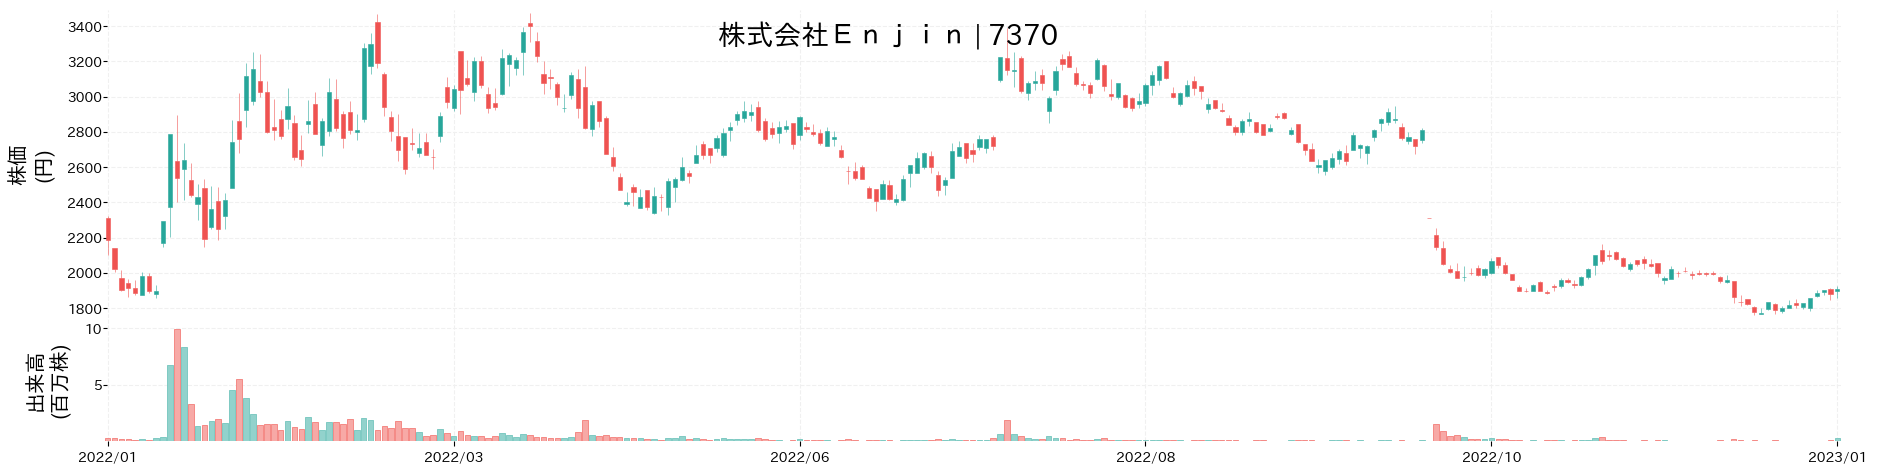 Enjinの株価推移(2022)